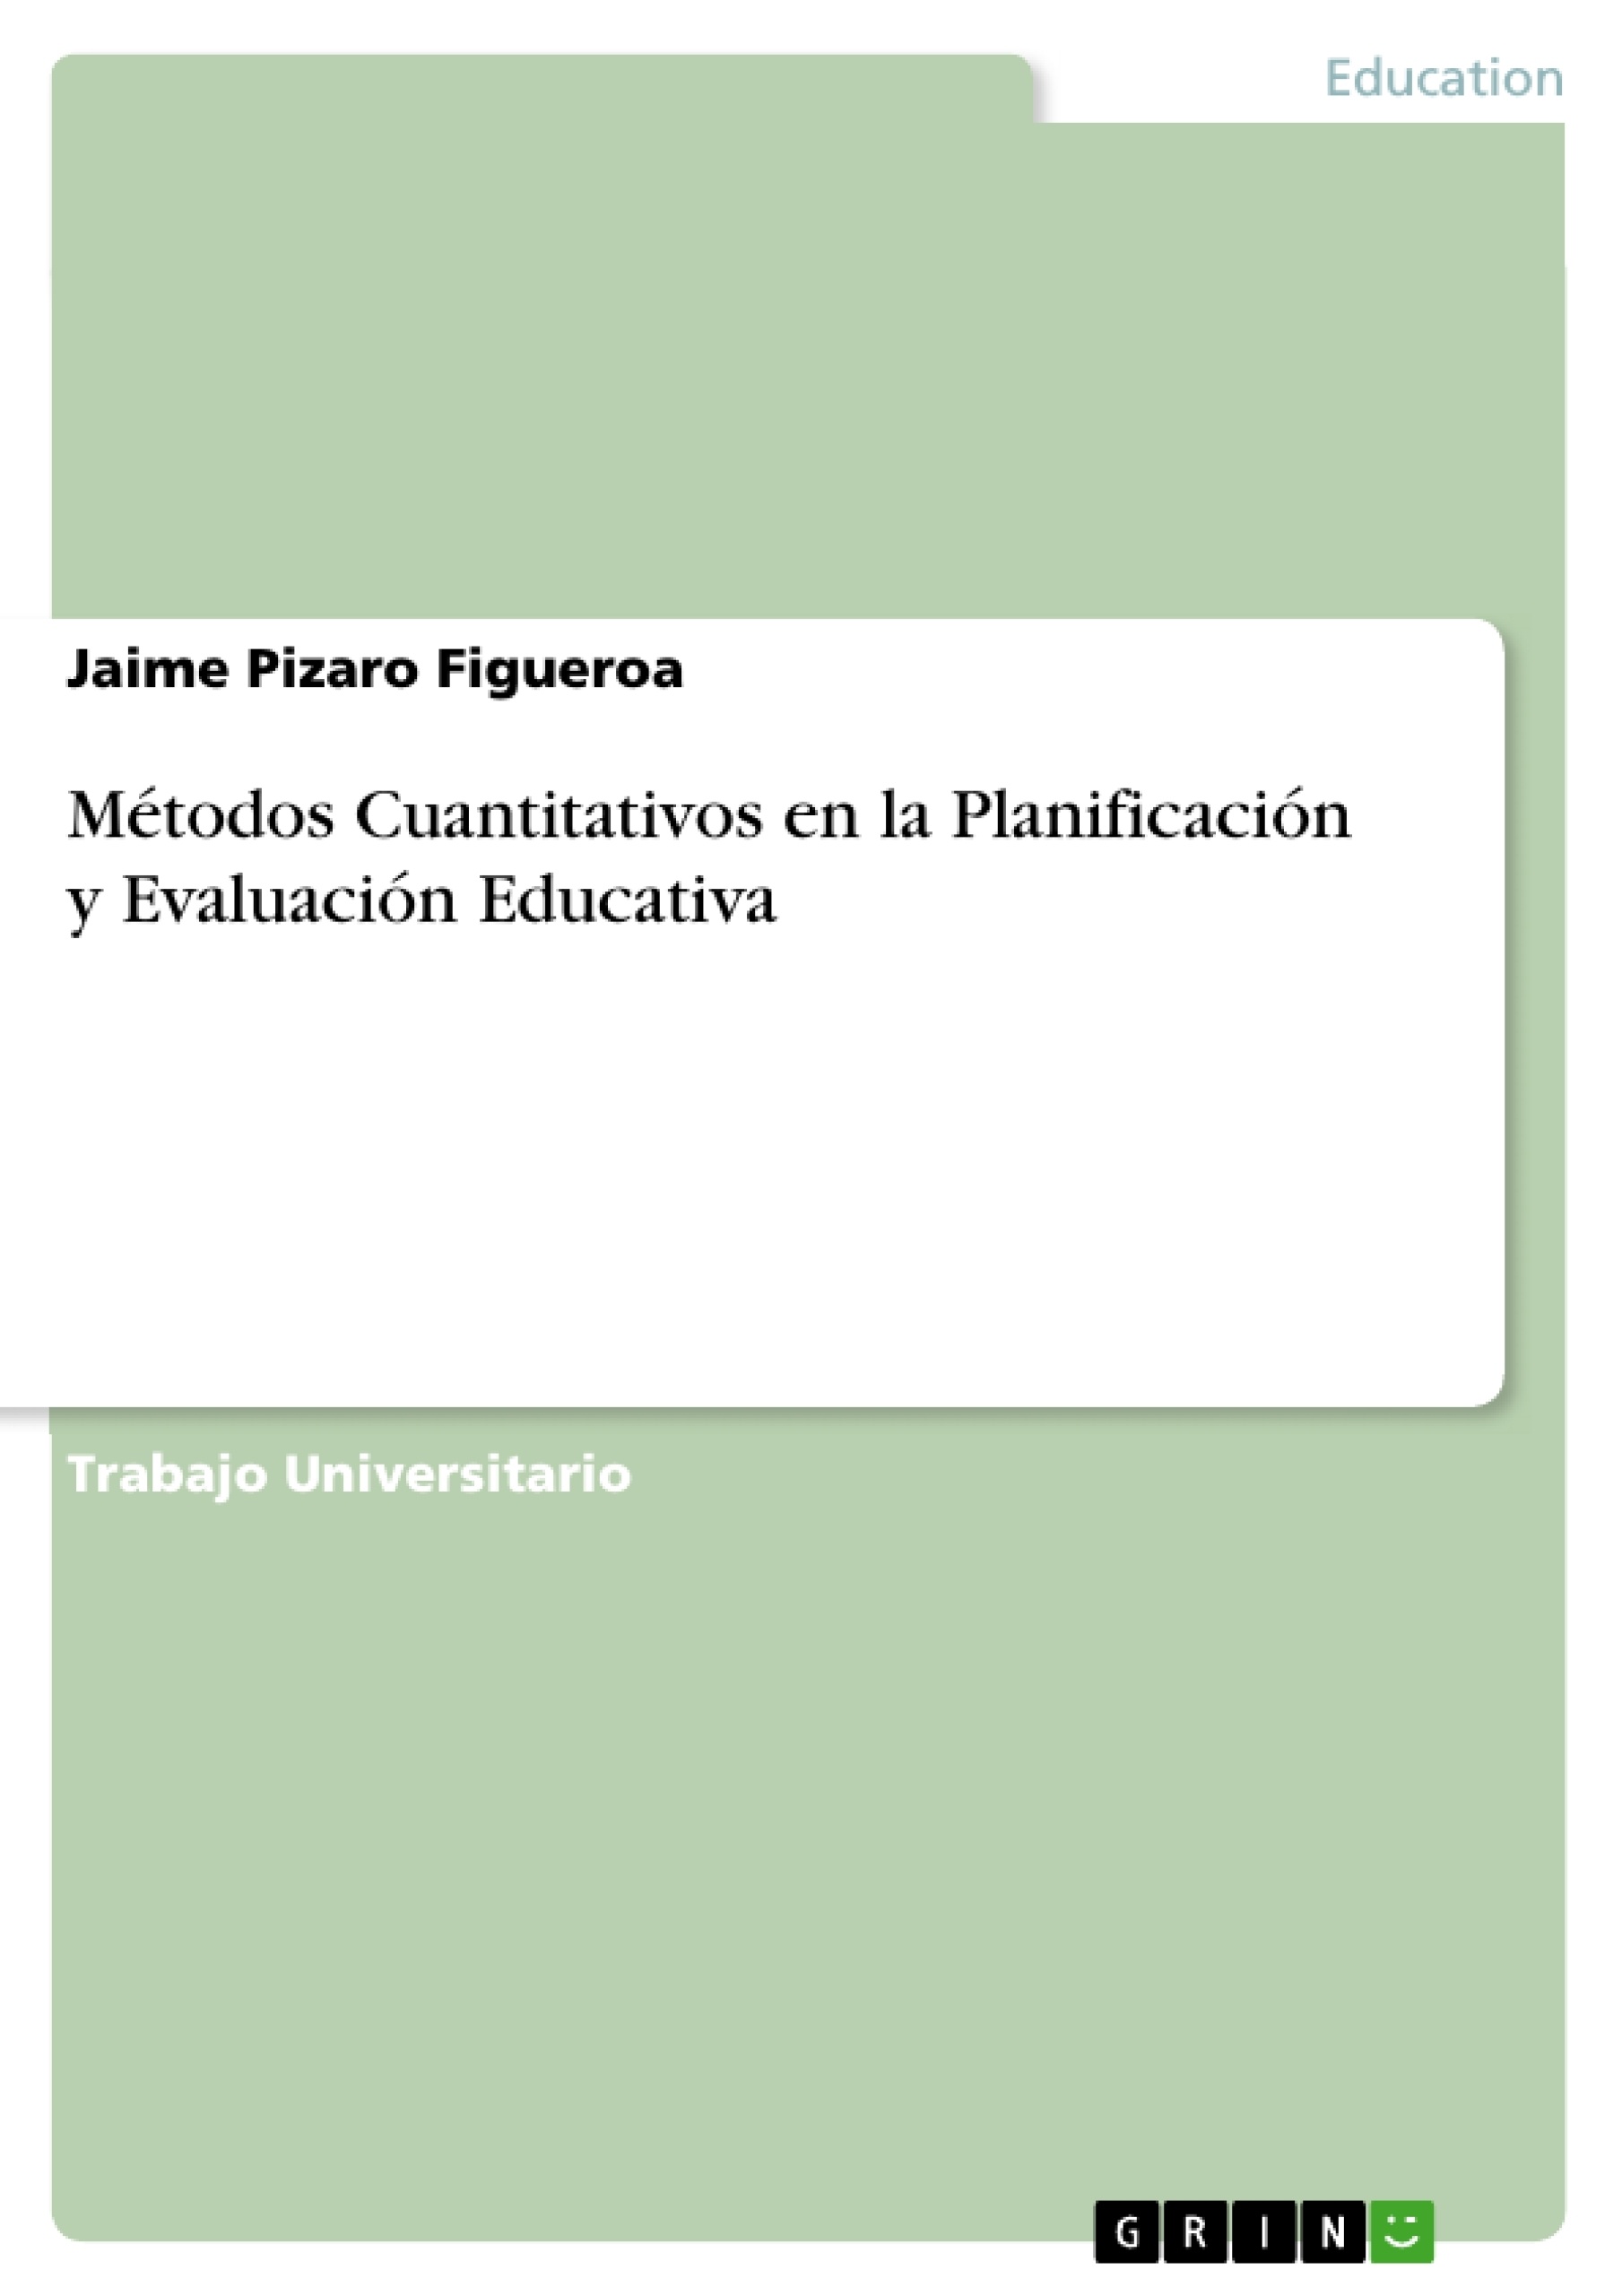 Titel: Métodos Cuantitativos en la Planificación y Evaluación Educativa